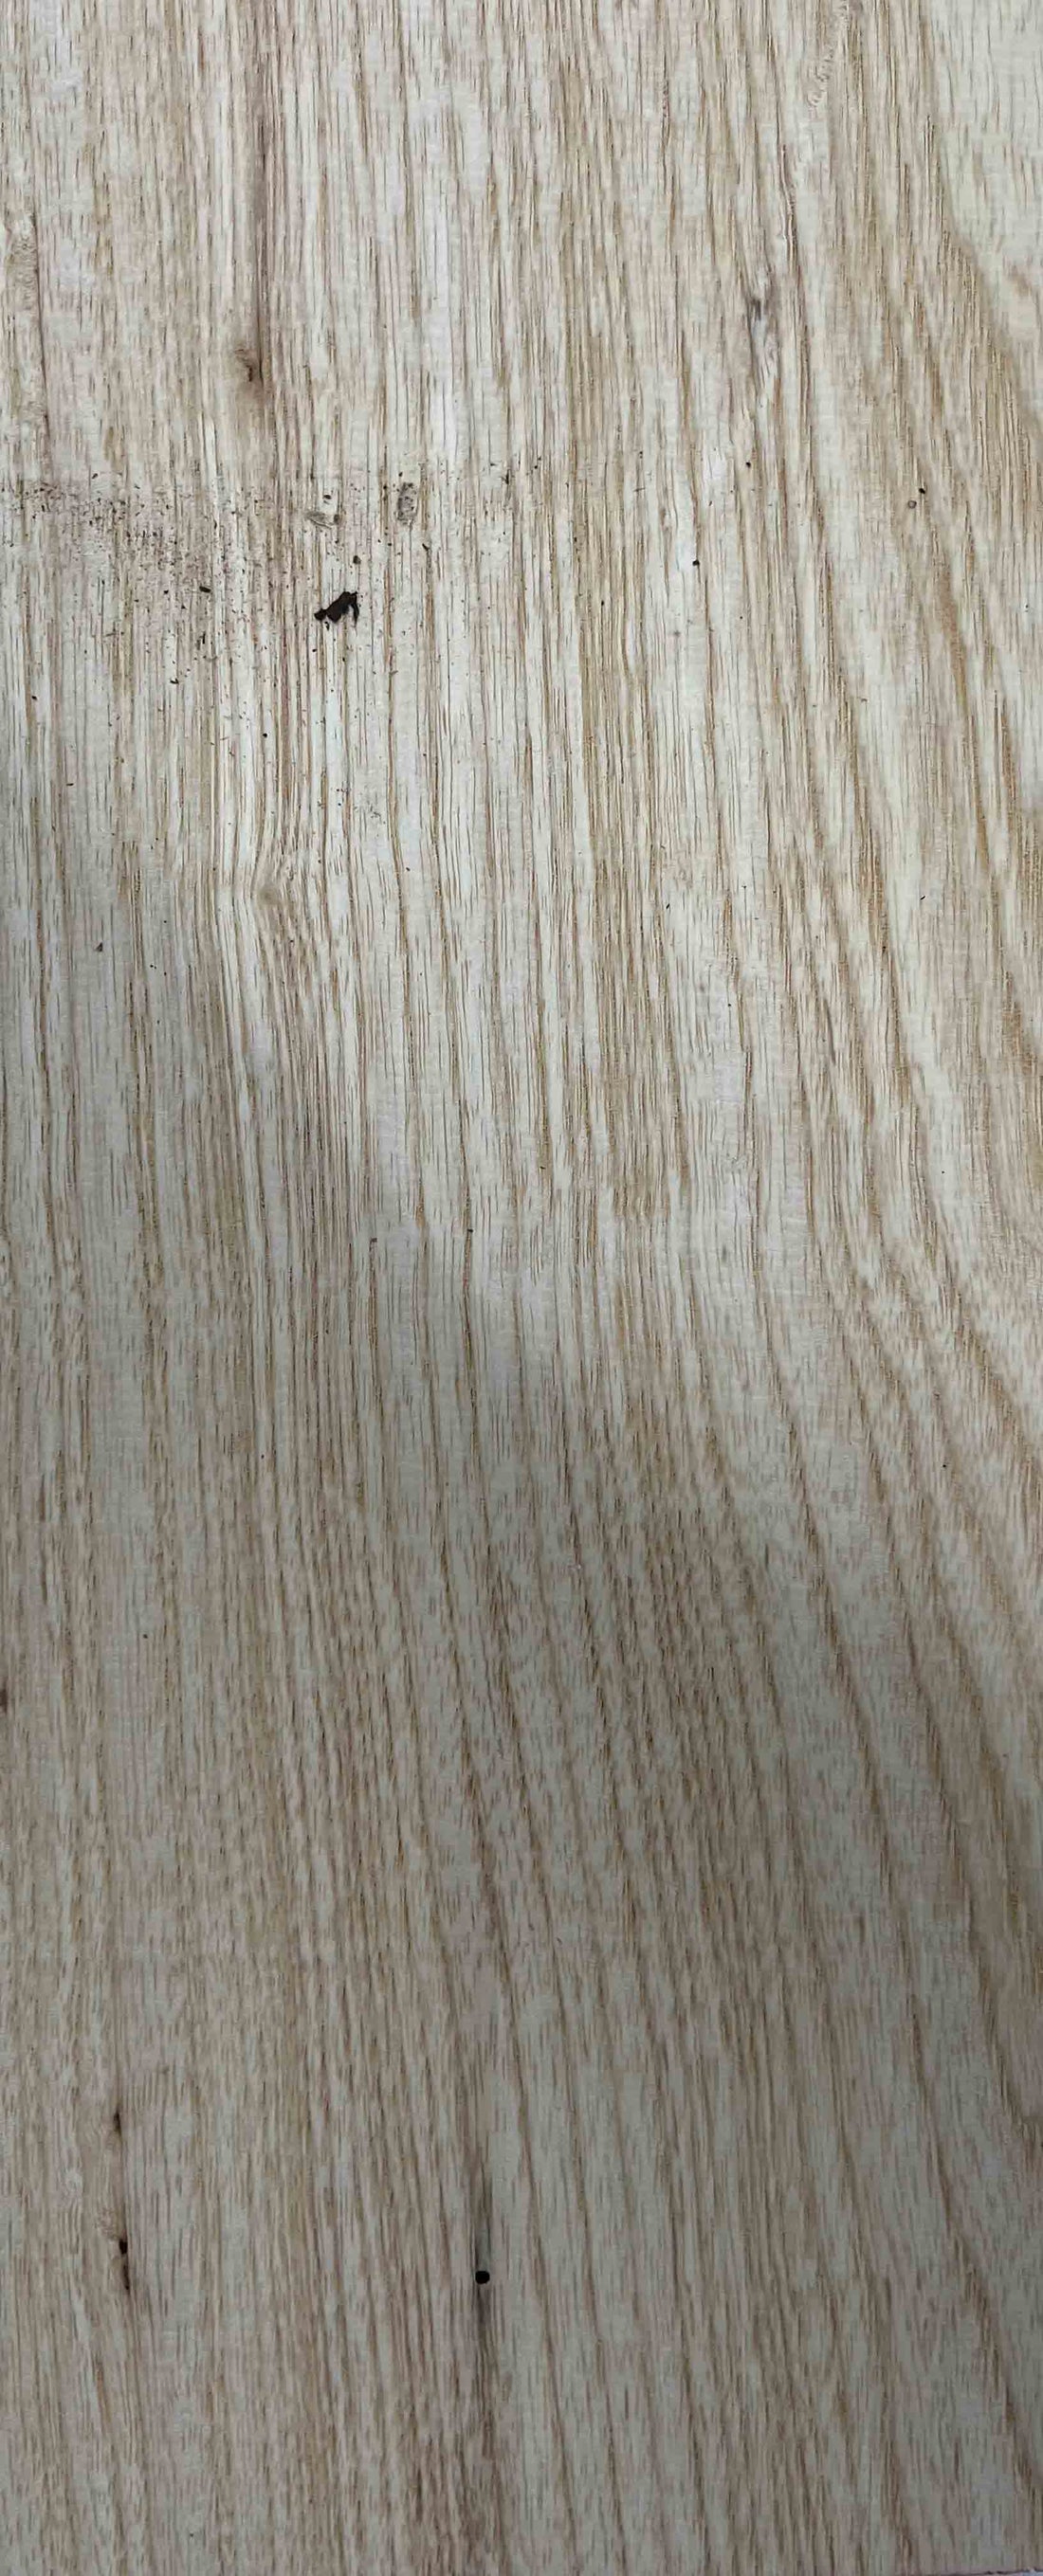 Ash Hardwood Lumber - Buy Ash Wood Online